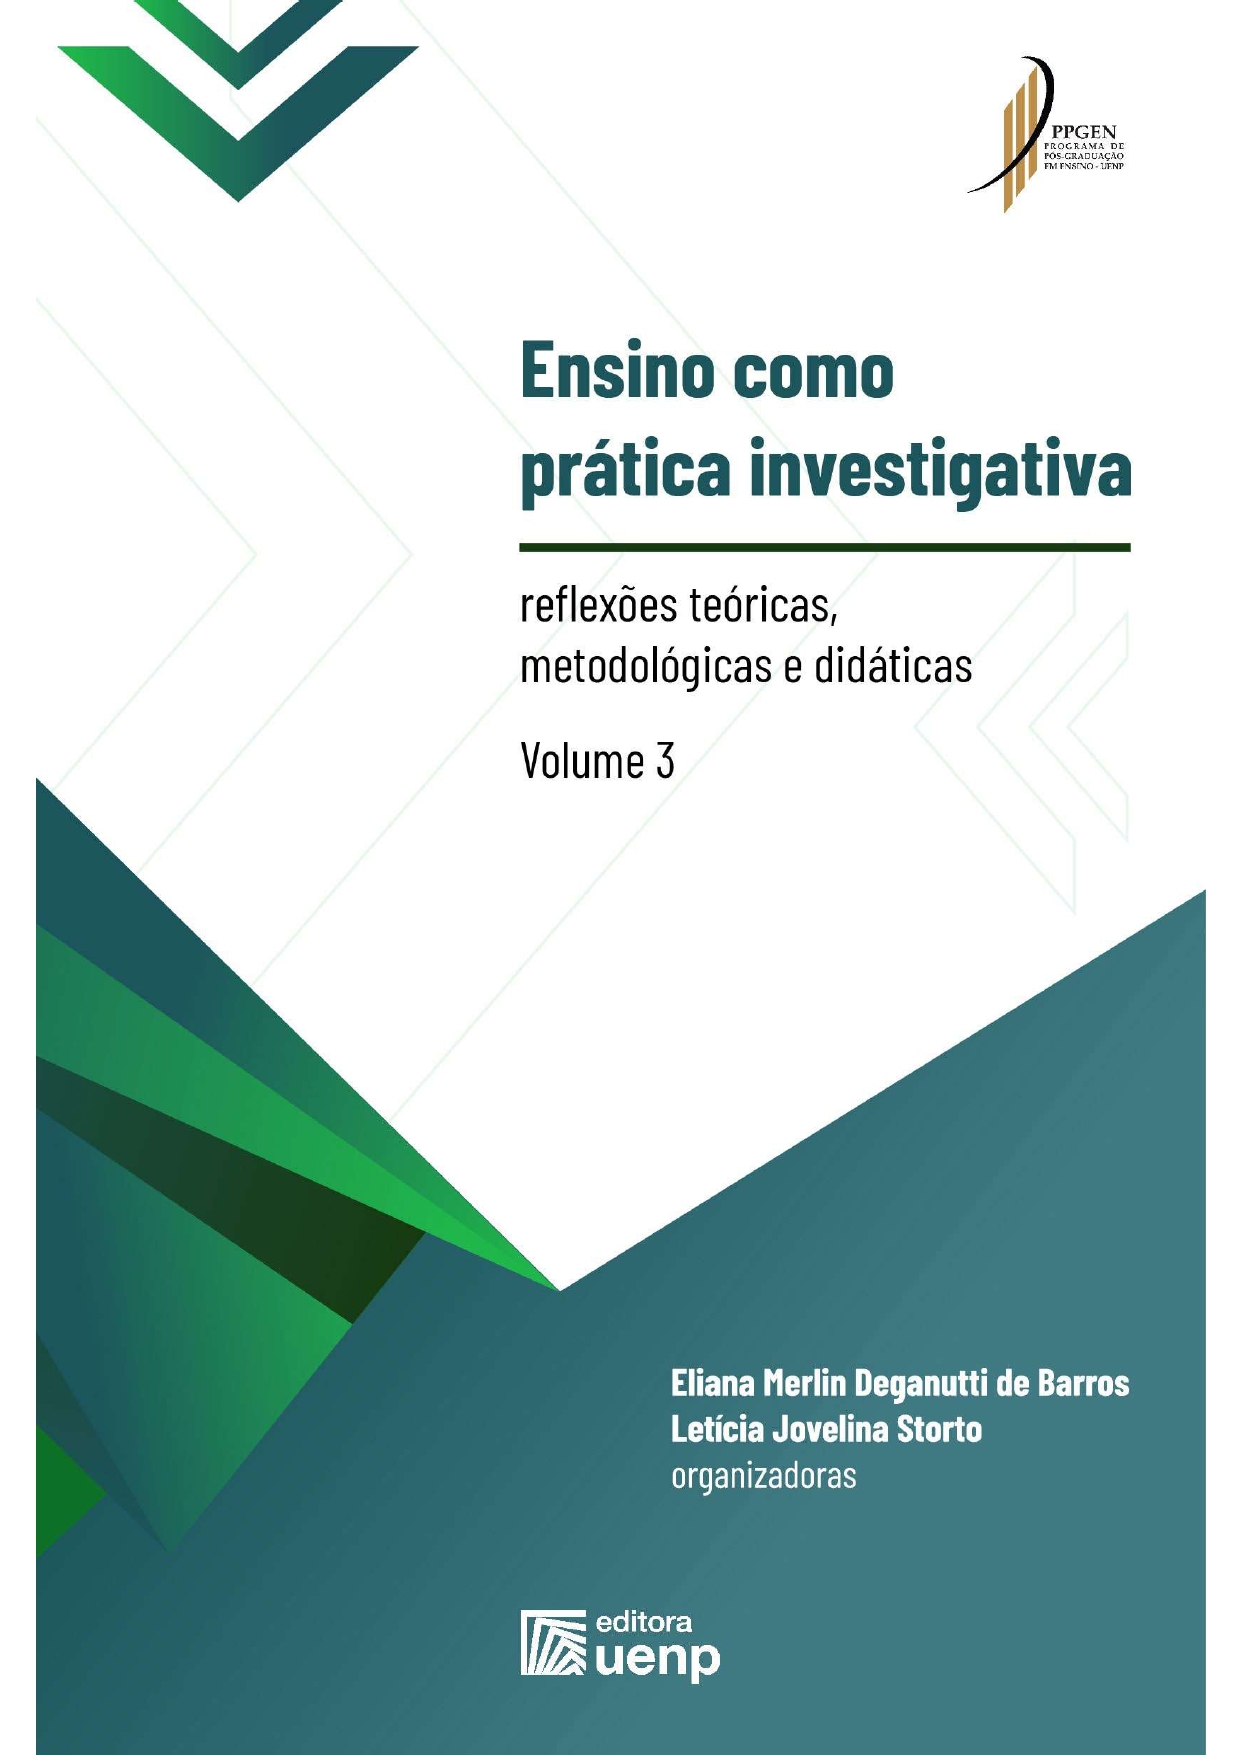 ENSINO COMO PRÁTICA INVESTIGATIVA: reflexões teóricas, metodológicas e didáticas - VOLUME 3